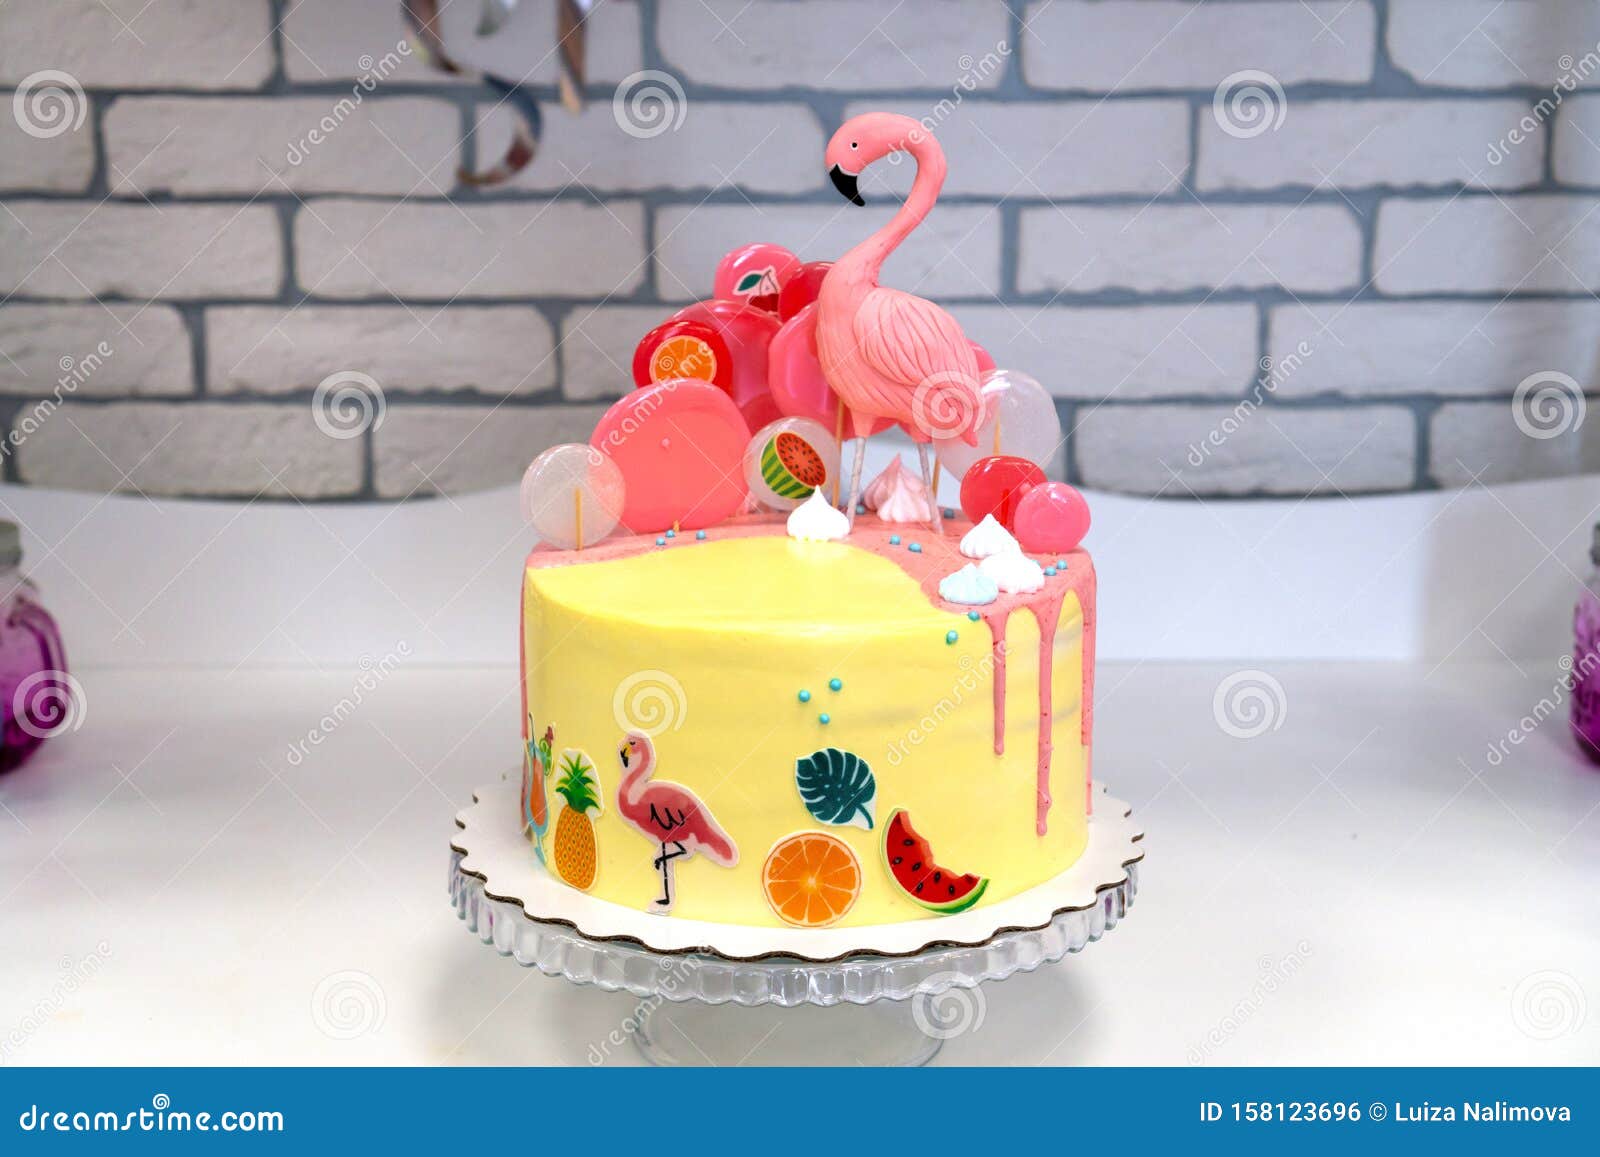 夏威夷派对上的火烈鸟蛋糕糖果吧的儿童生日蛋糕库存照片 图片包括有礼服 蛋糕 卢奥 五彩纸屑